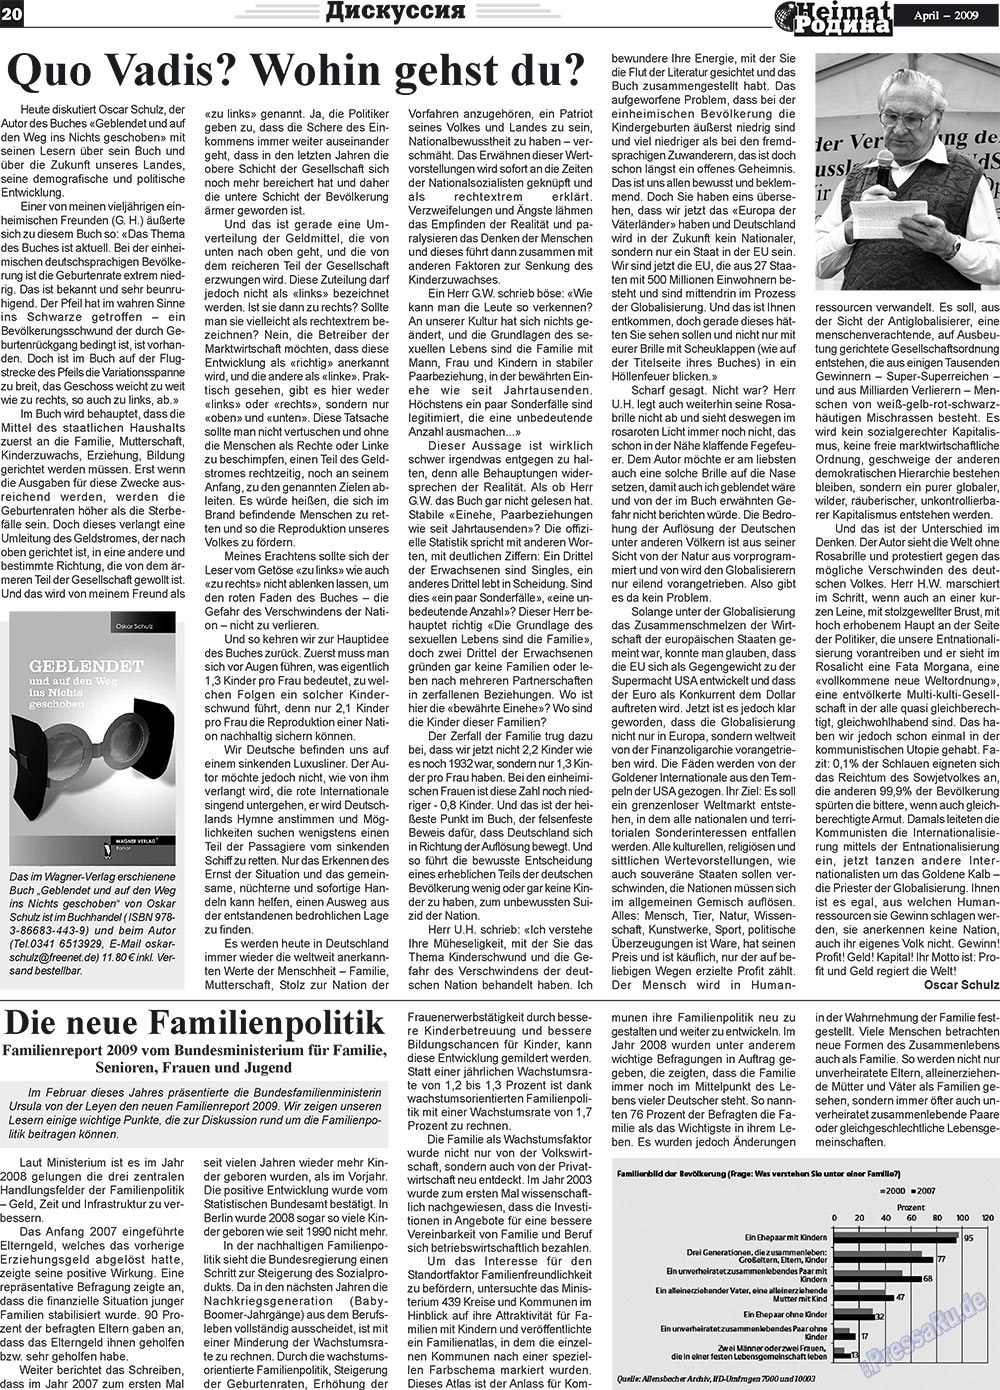 Heimat-Родина (газета). 2009 год, номер 4, стр. 20